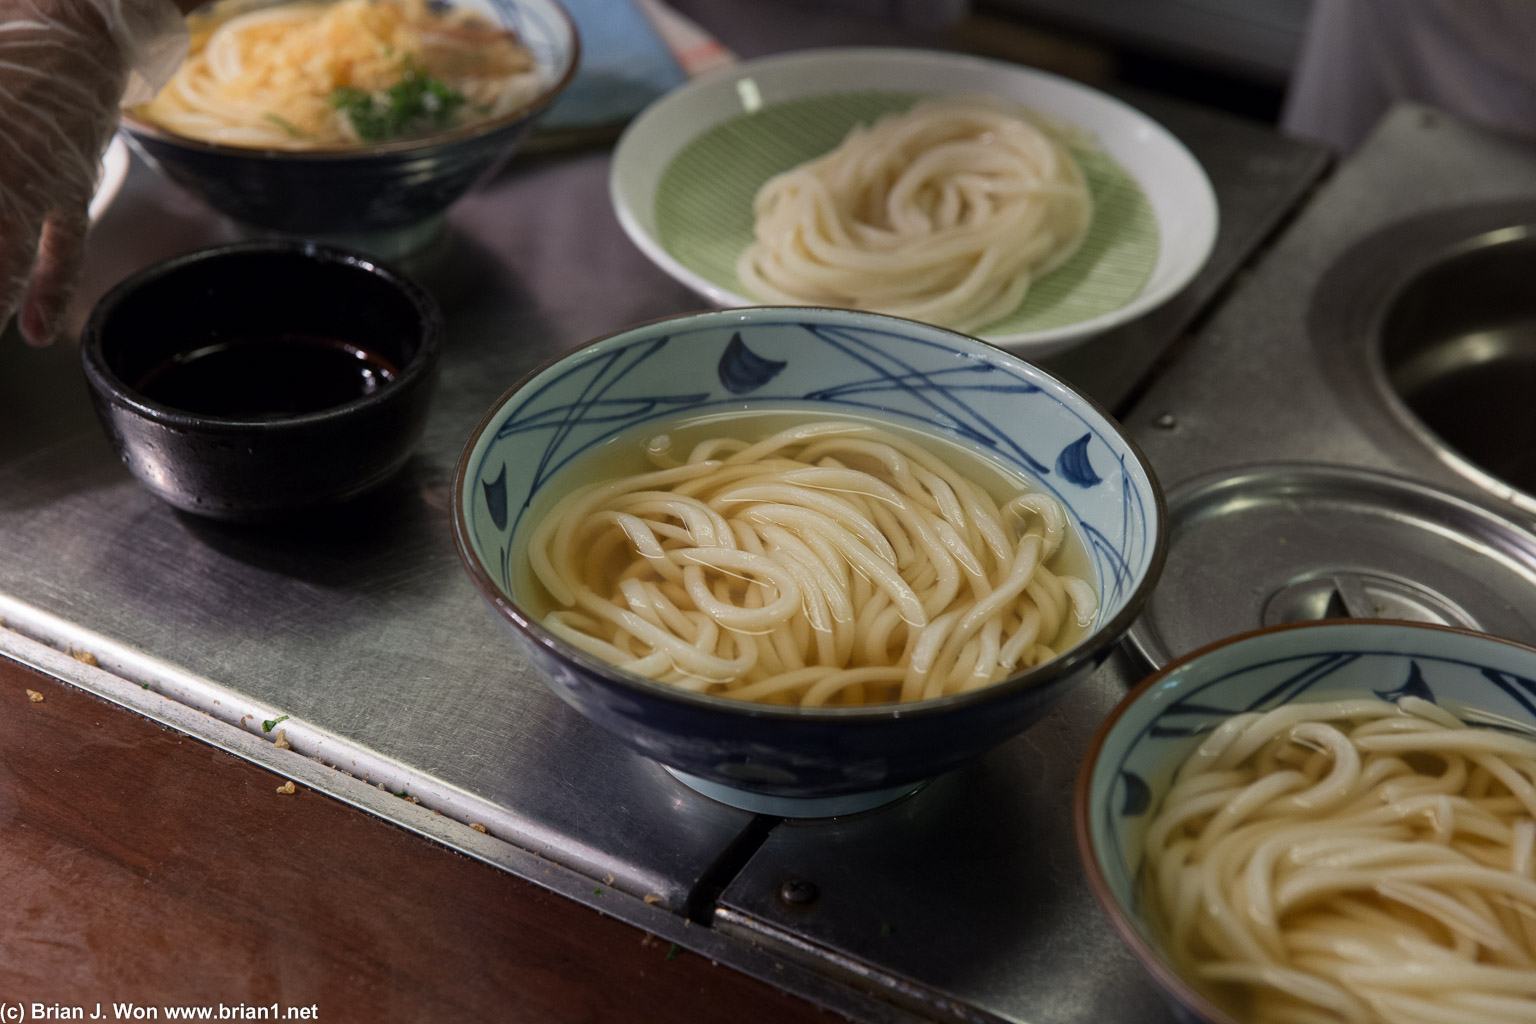 Mmmmm fresh bowls of udon...